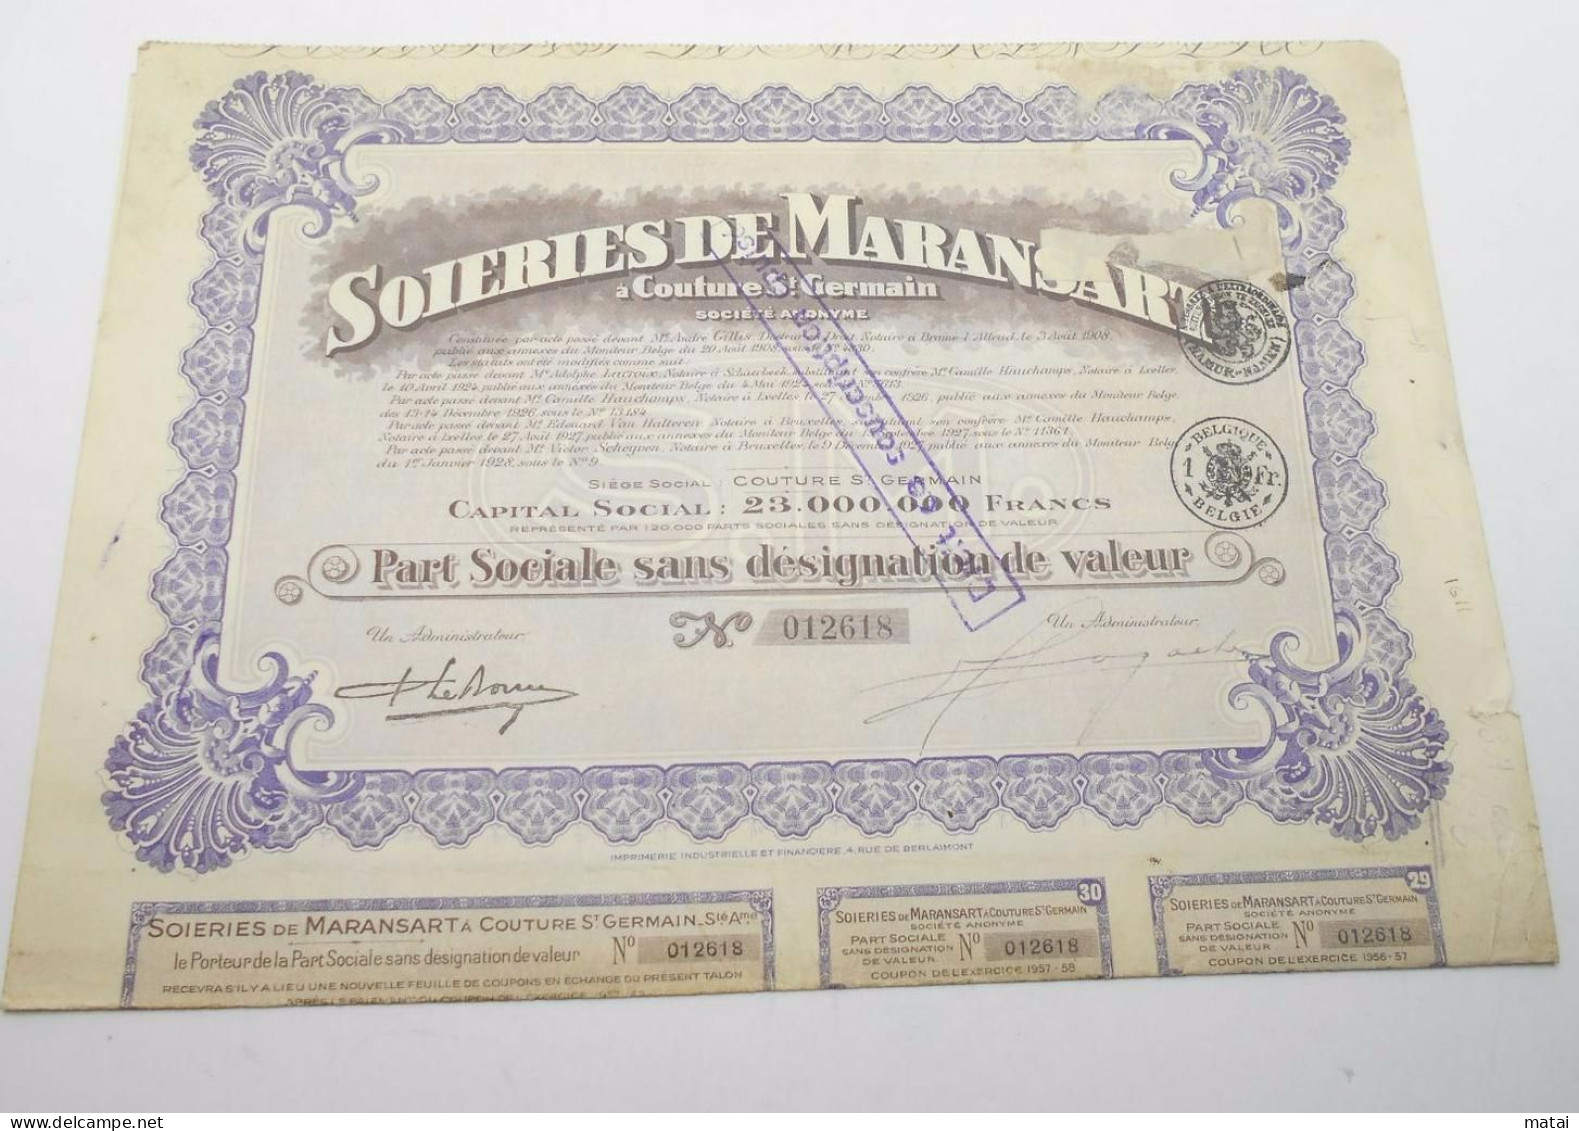 Part Sociale " Soieries De Maransart " Couture St Germain 1928 Soie Textile ,avec Tous Les Coupons N° 012618 - Textil